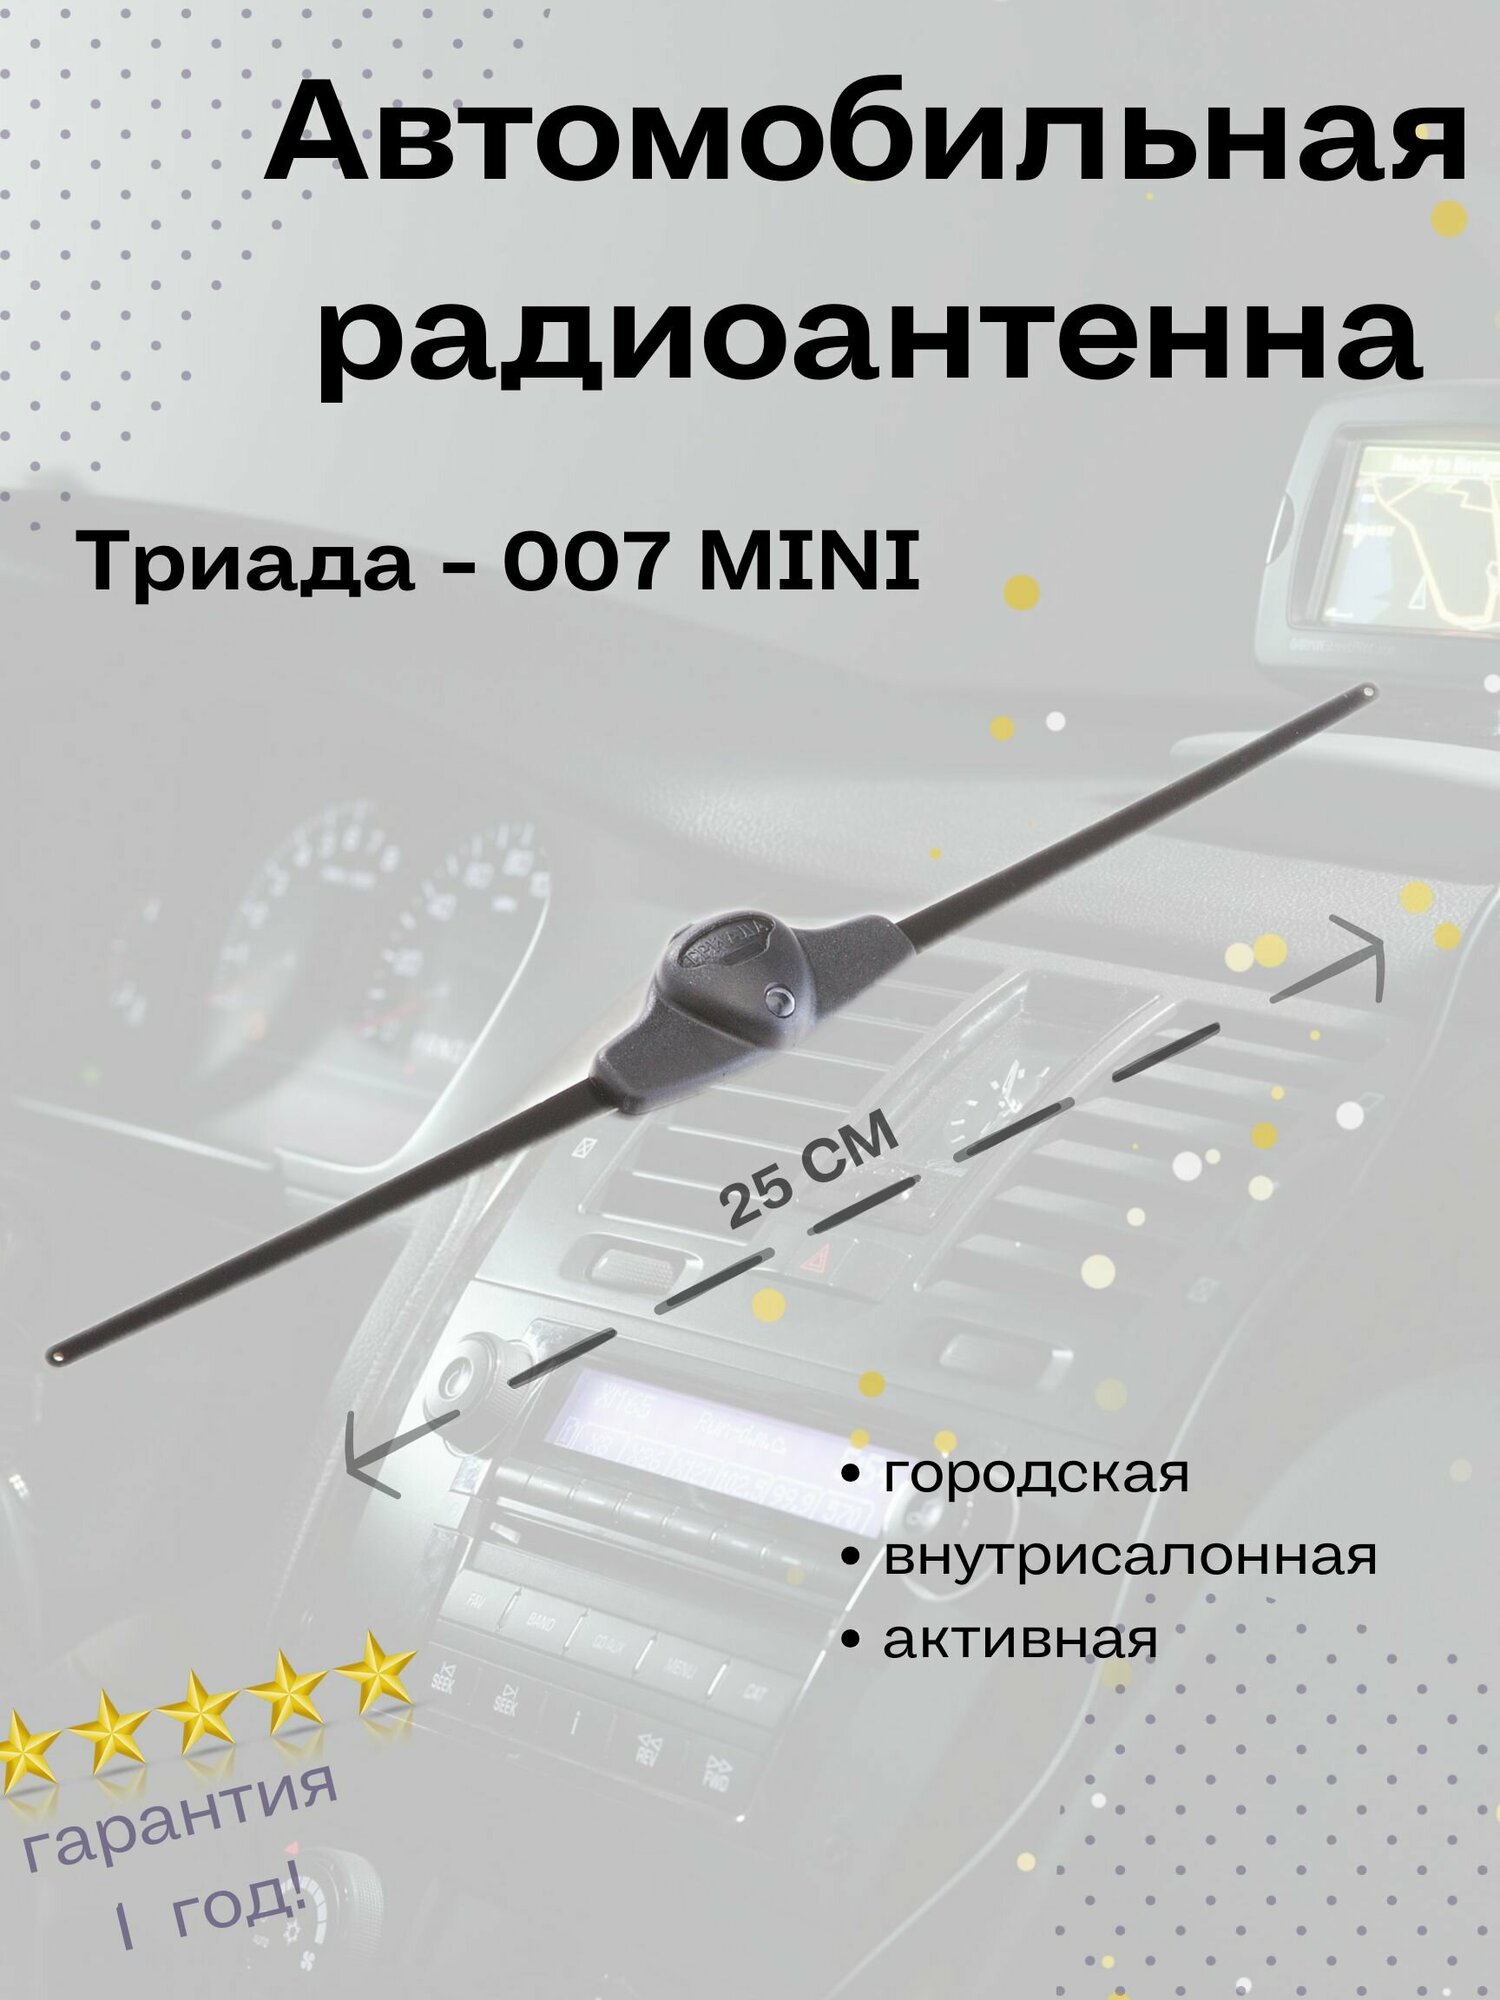 Автомобильная антенна Триада-007 Mini - фото №1